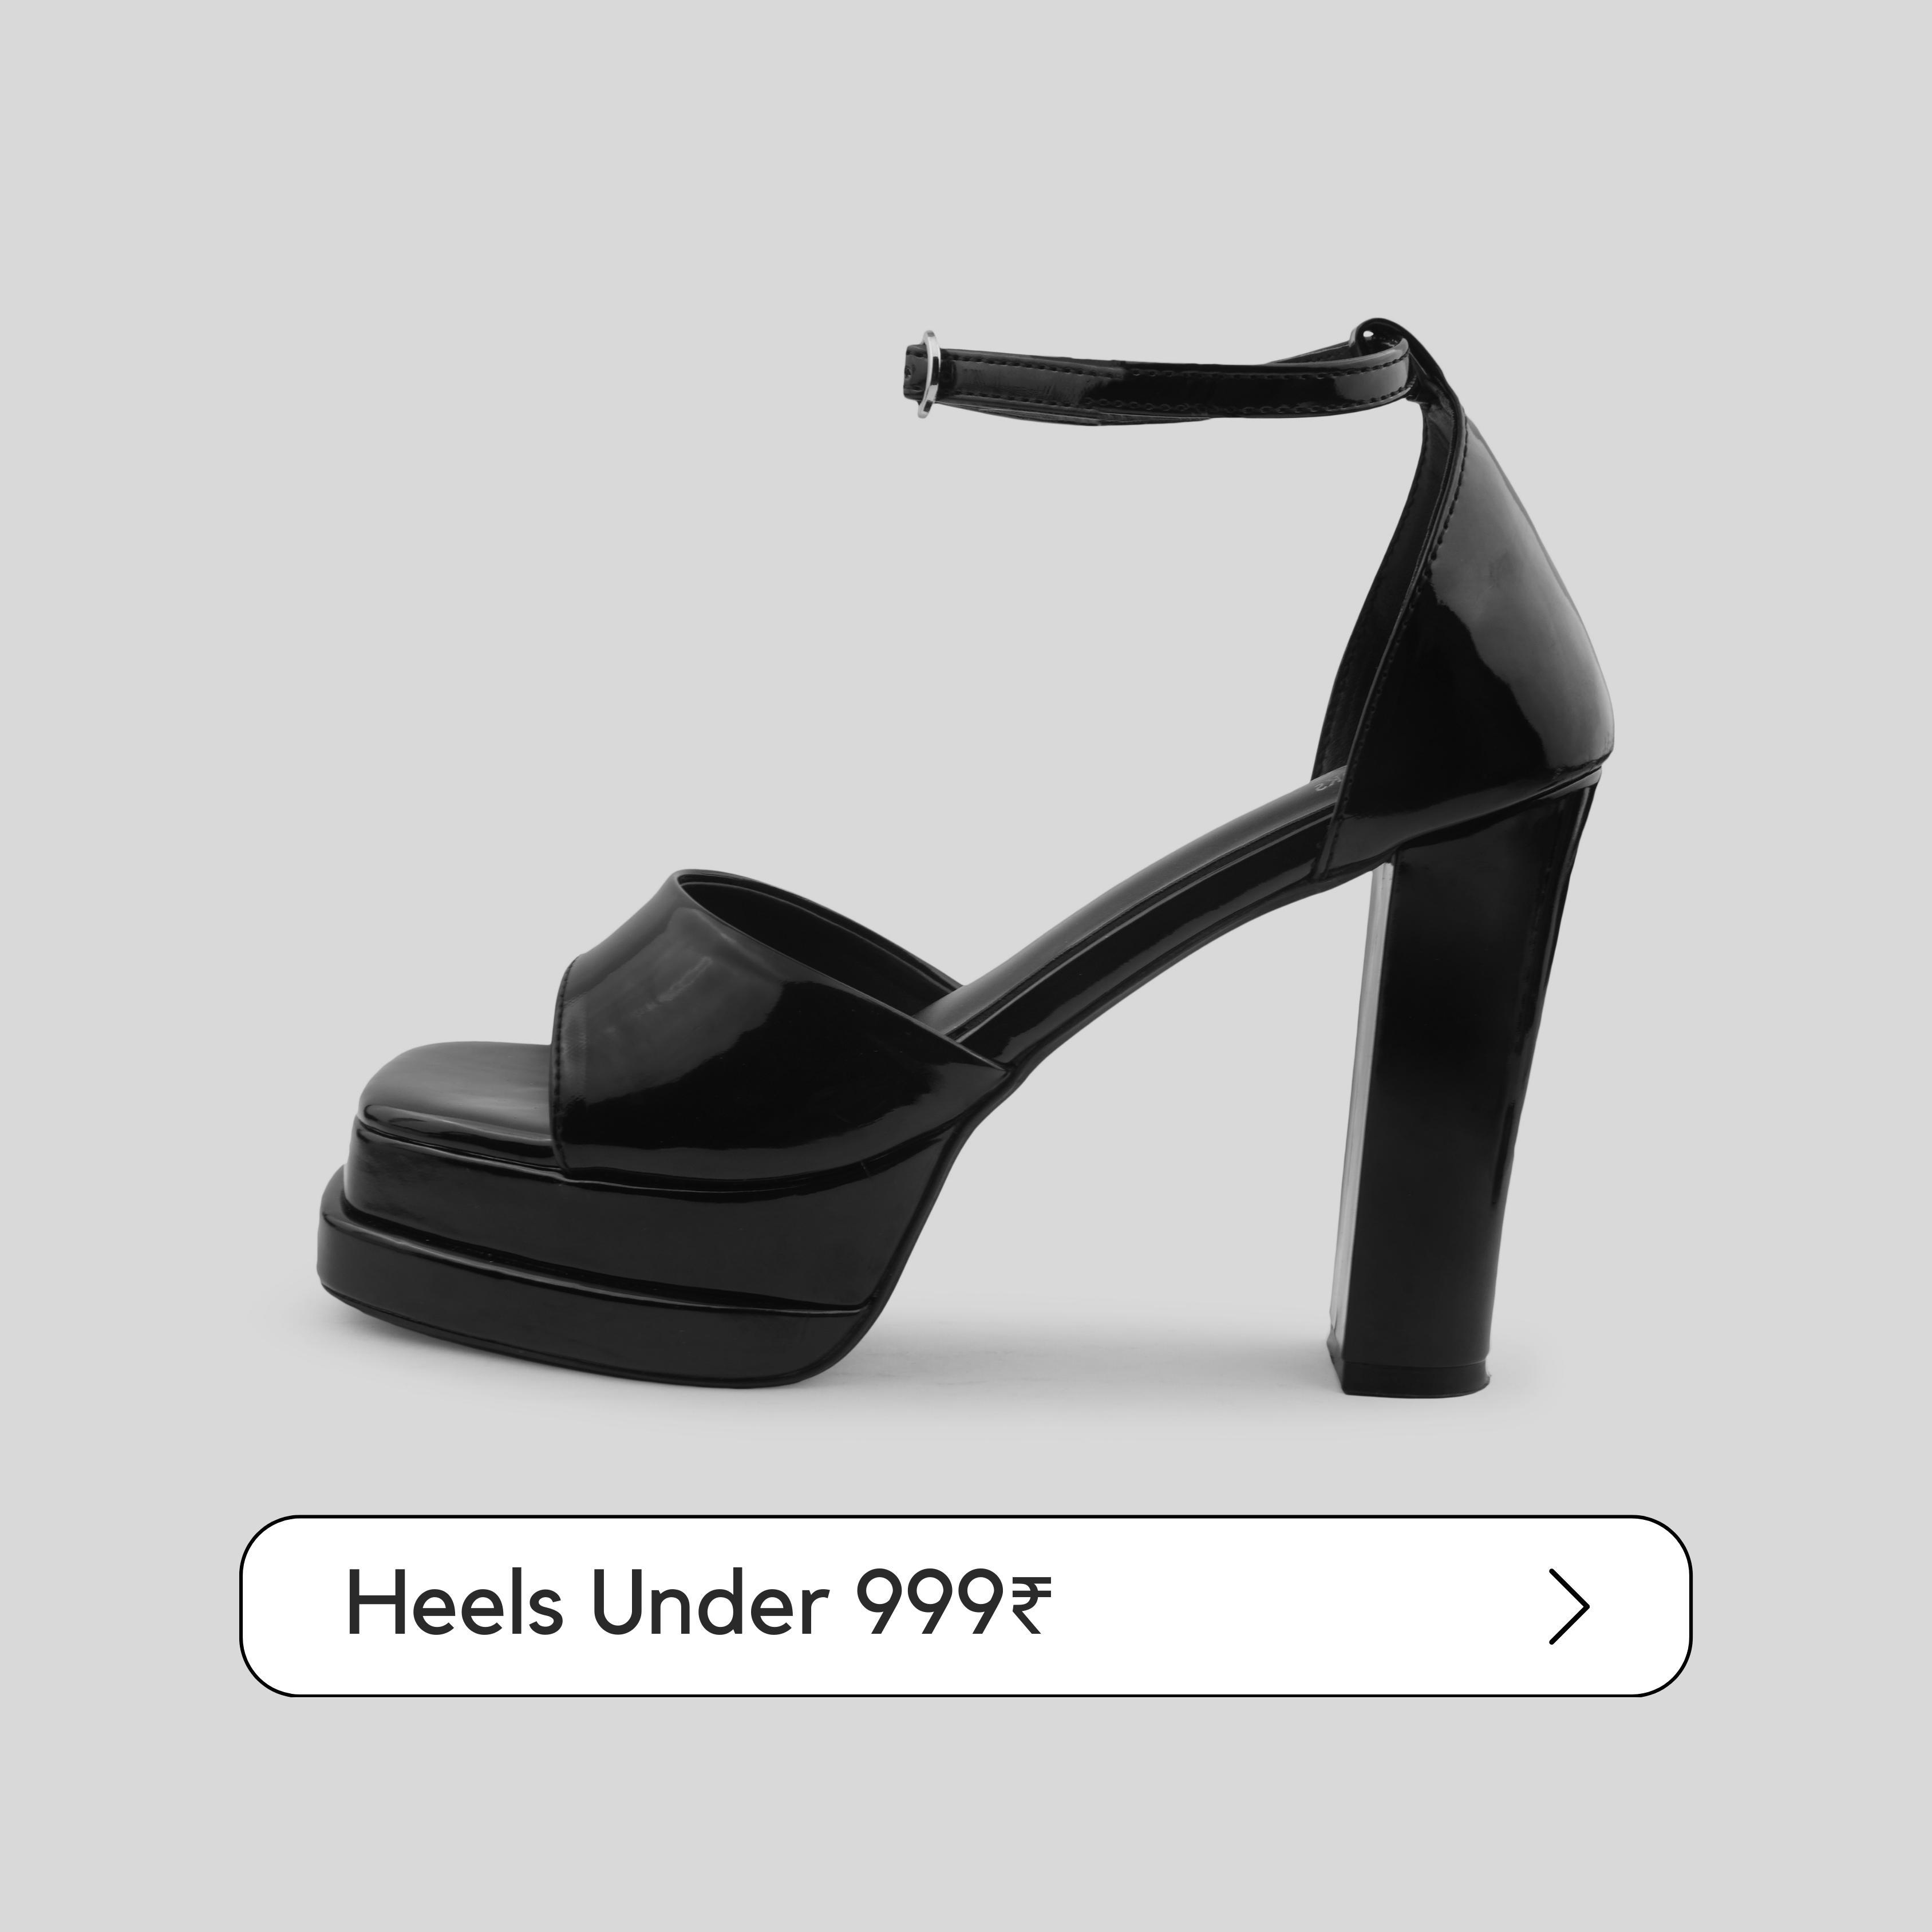 Heels under 999